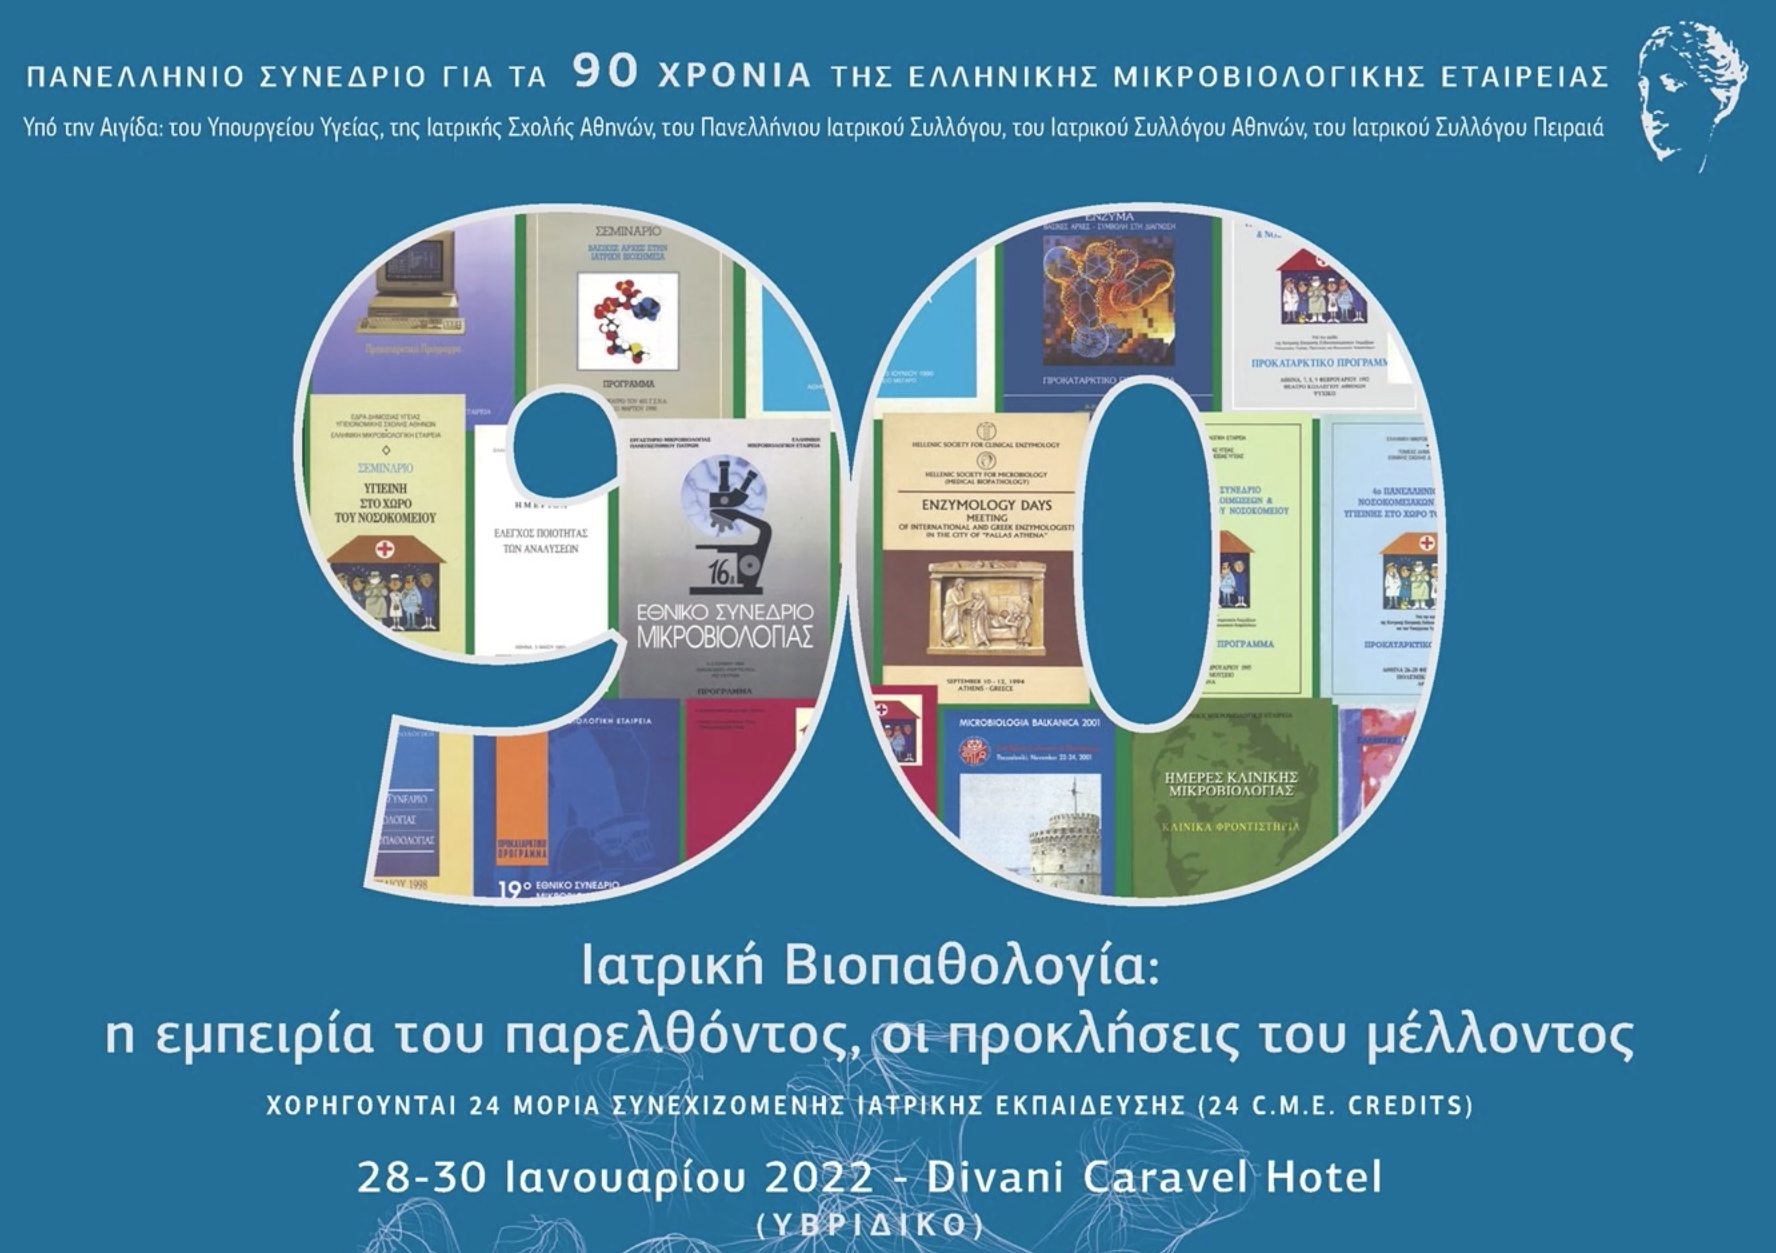 Συμμετοχή της Prime Biosciences στο Πανελλήνιο Συνέδριο για τα 90 χρόνια της Ελληνικής Μικροβιολογικής Εταιρείας